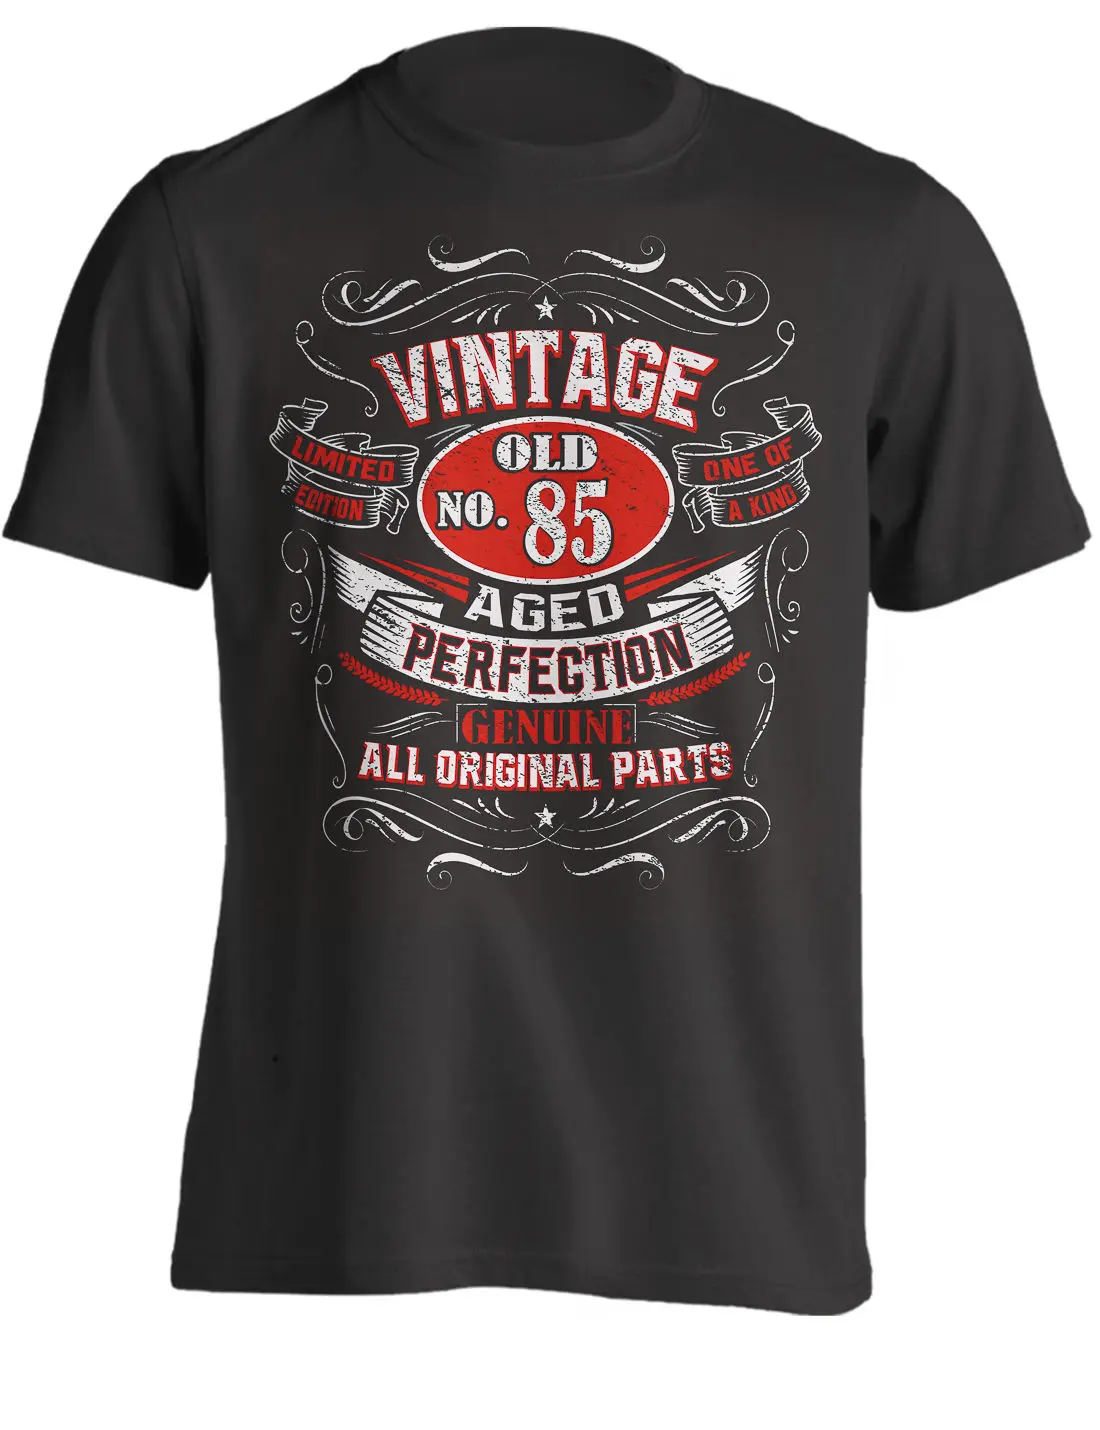 2019 100% хлопок футболки для мужчин винтаж 85-й подарок на день рождения рубашка для мужчин родился в 1933 Ретро стиль футболка